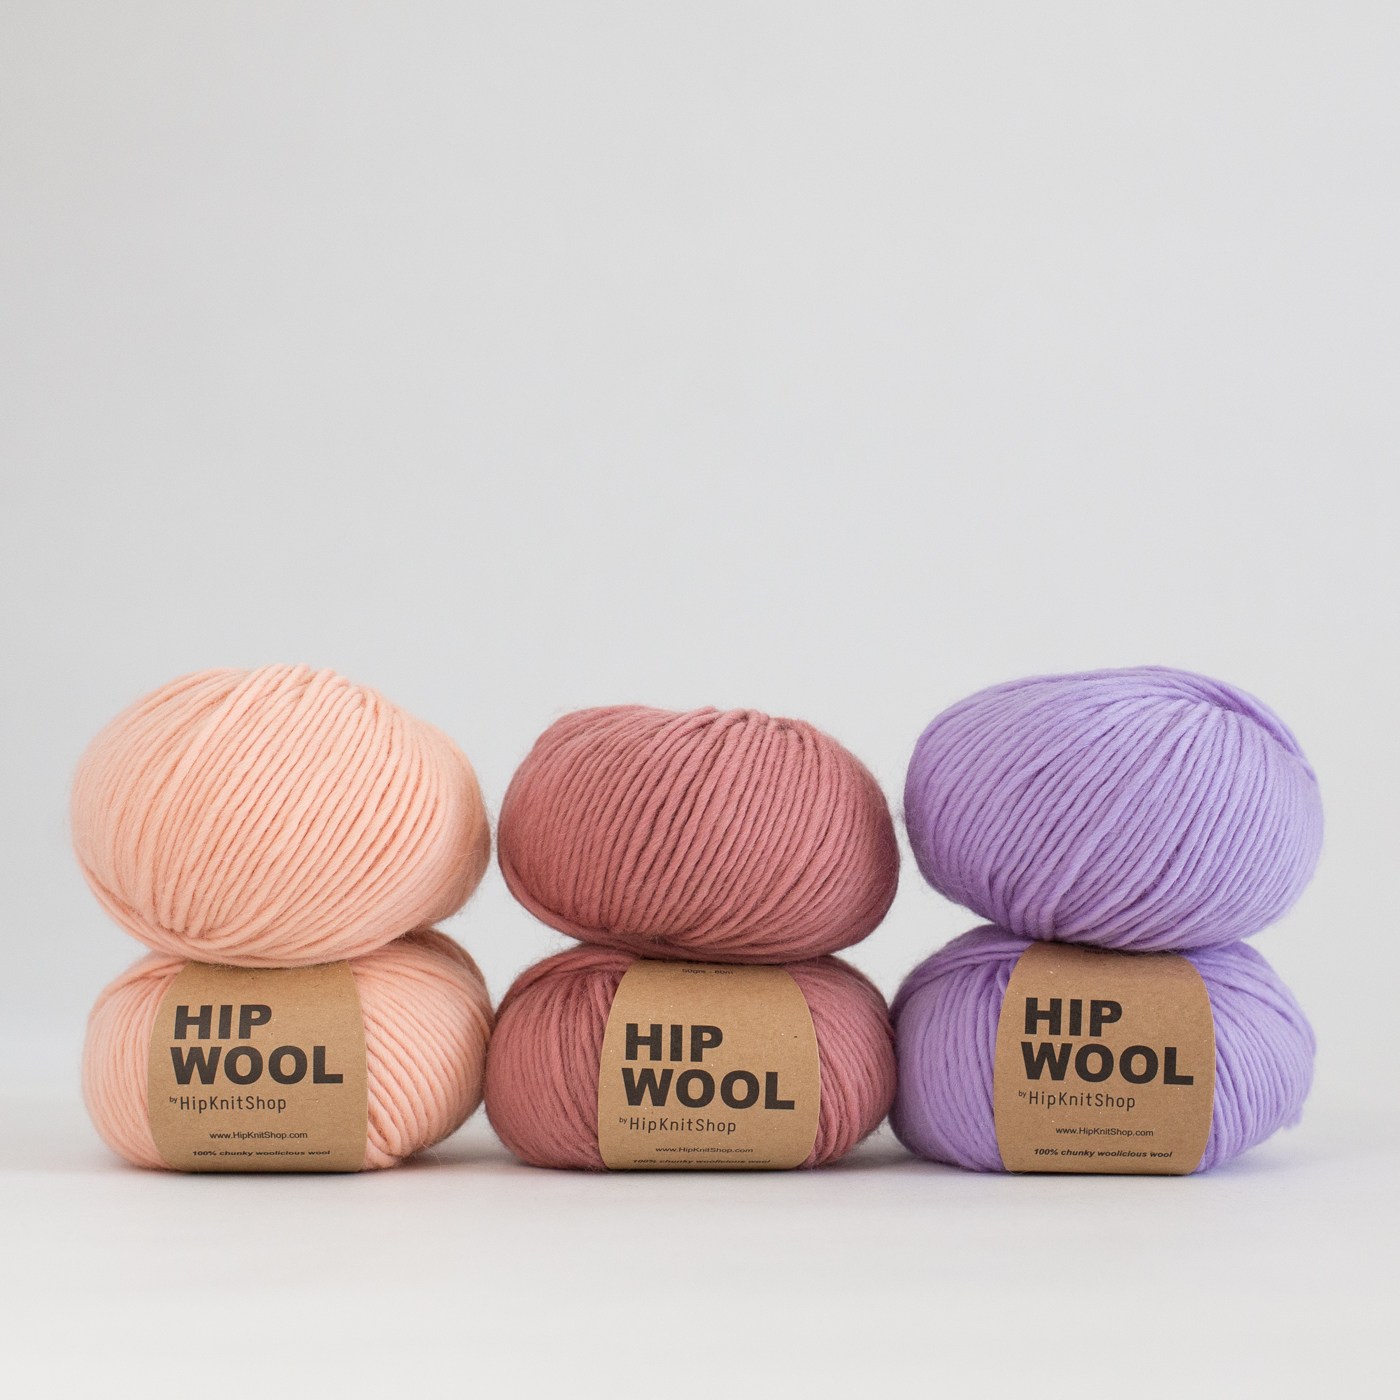  - Just Peachy Hip Wool yarn | Peach yarn | Pure wool - by HipKnitShop - 09/09/2018